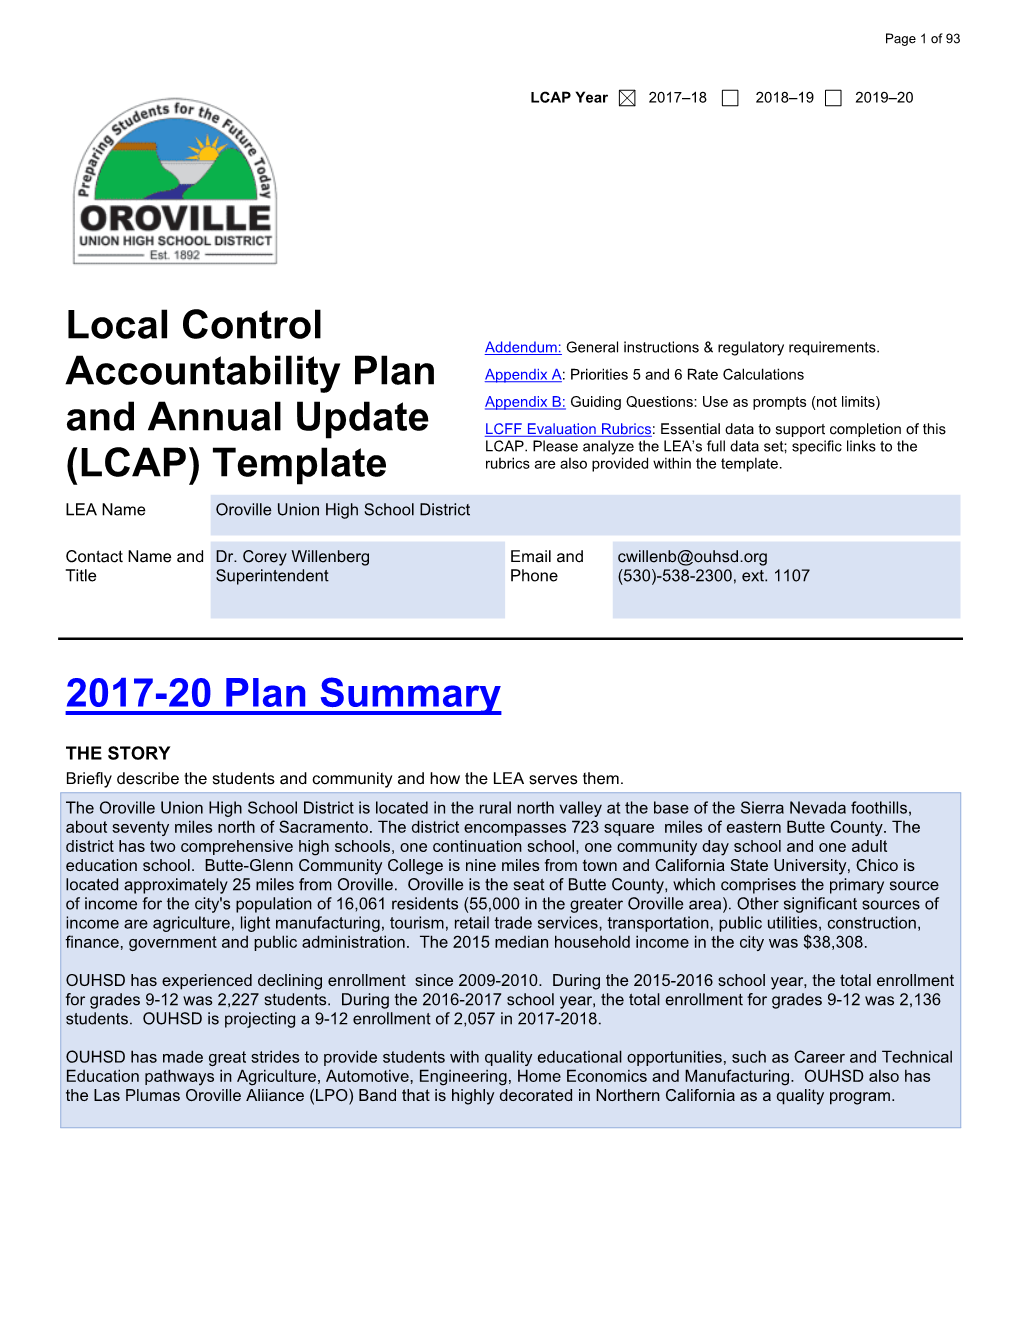 2017-20 LCAP & 2016-17 Annual Update